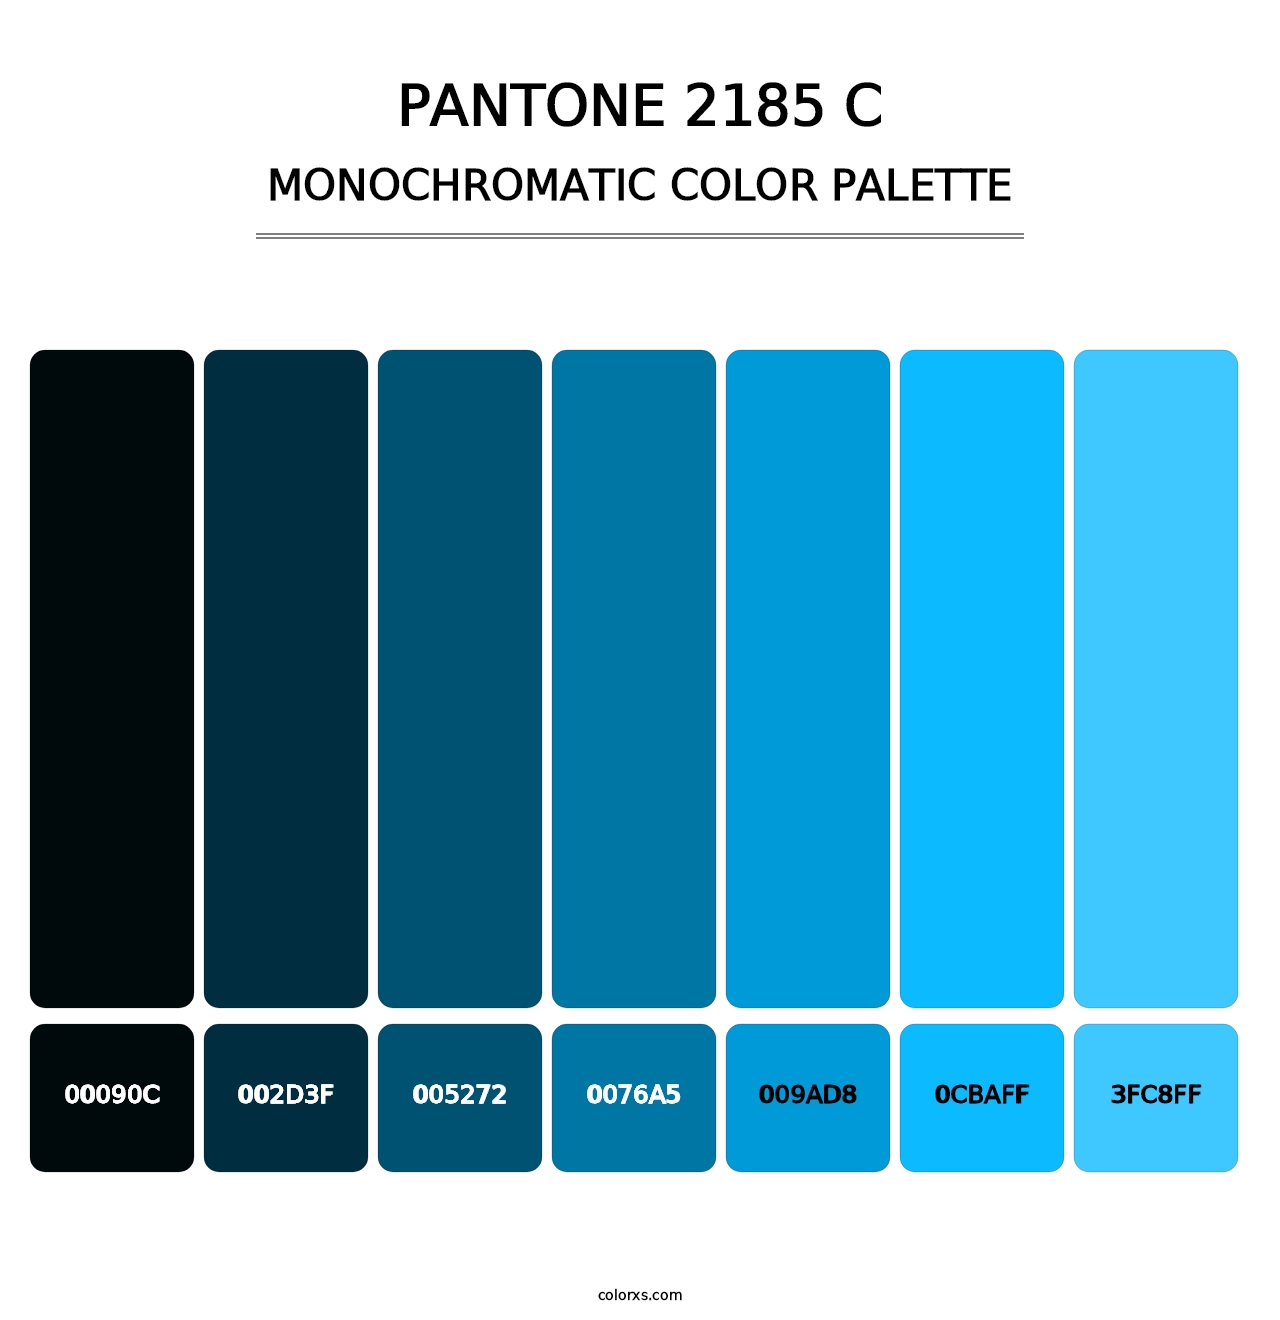 PANTONE 2185 C - Monochromatic Color Palette